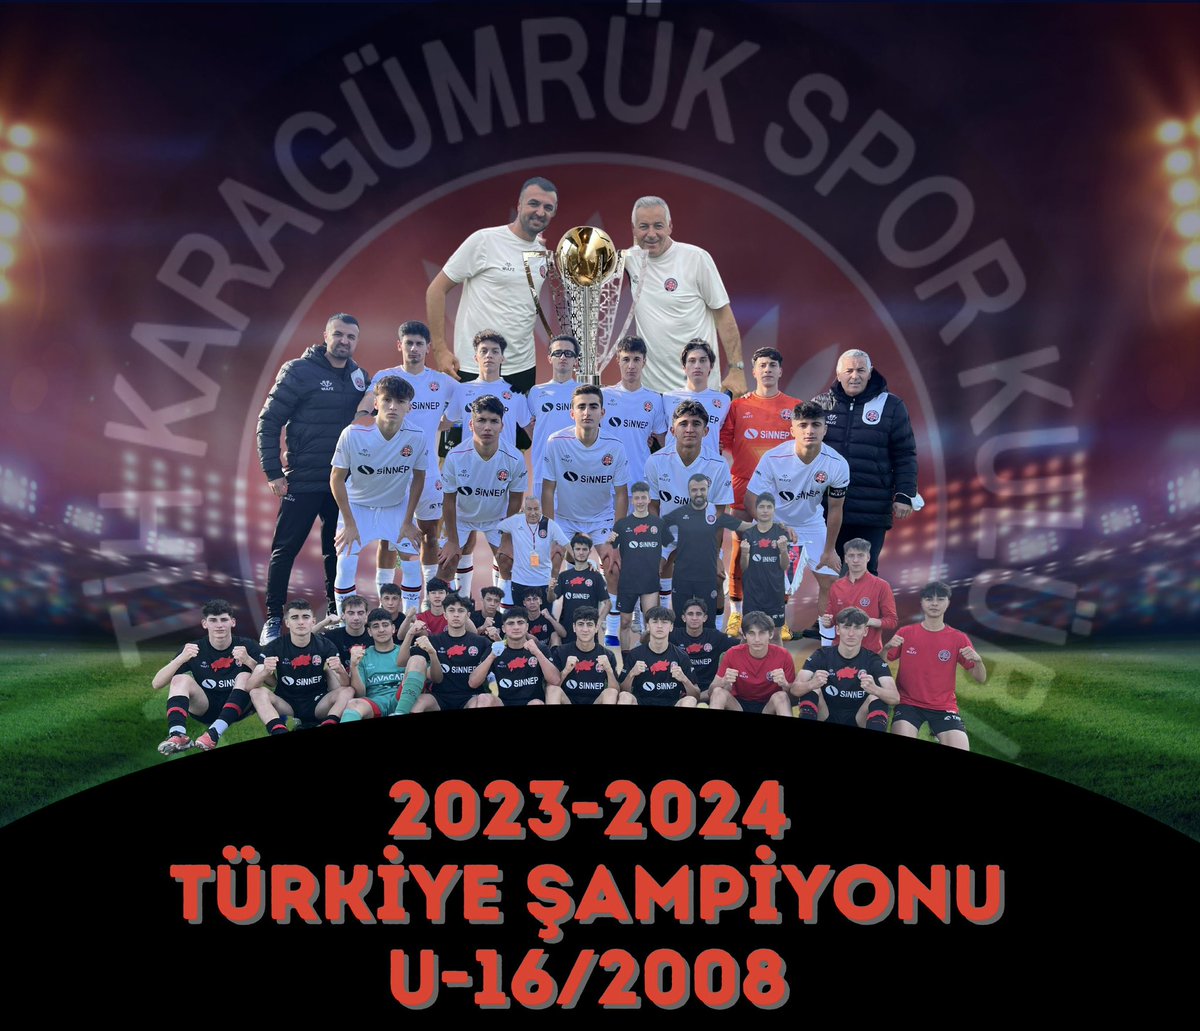 U16 Türkiye Şampiyonası Final maçında Antalyaspor’u 1-0 mağlup eden takımımız Türkiye şampiyonu oldu! Takımımızın tek golü 17. dakikada Yiğit Sert’ten geldi.